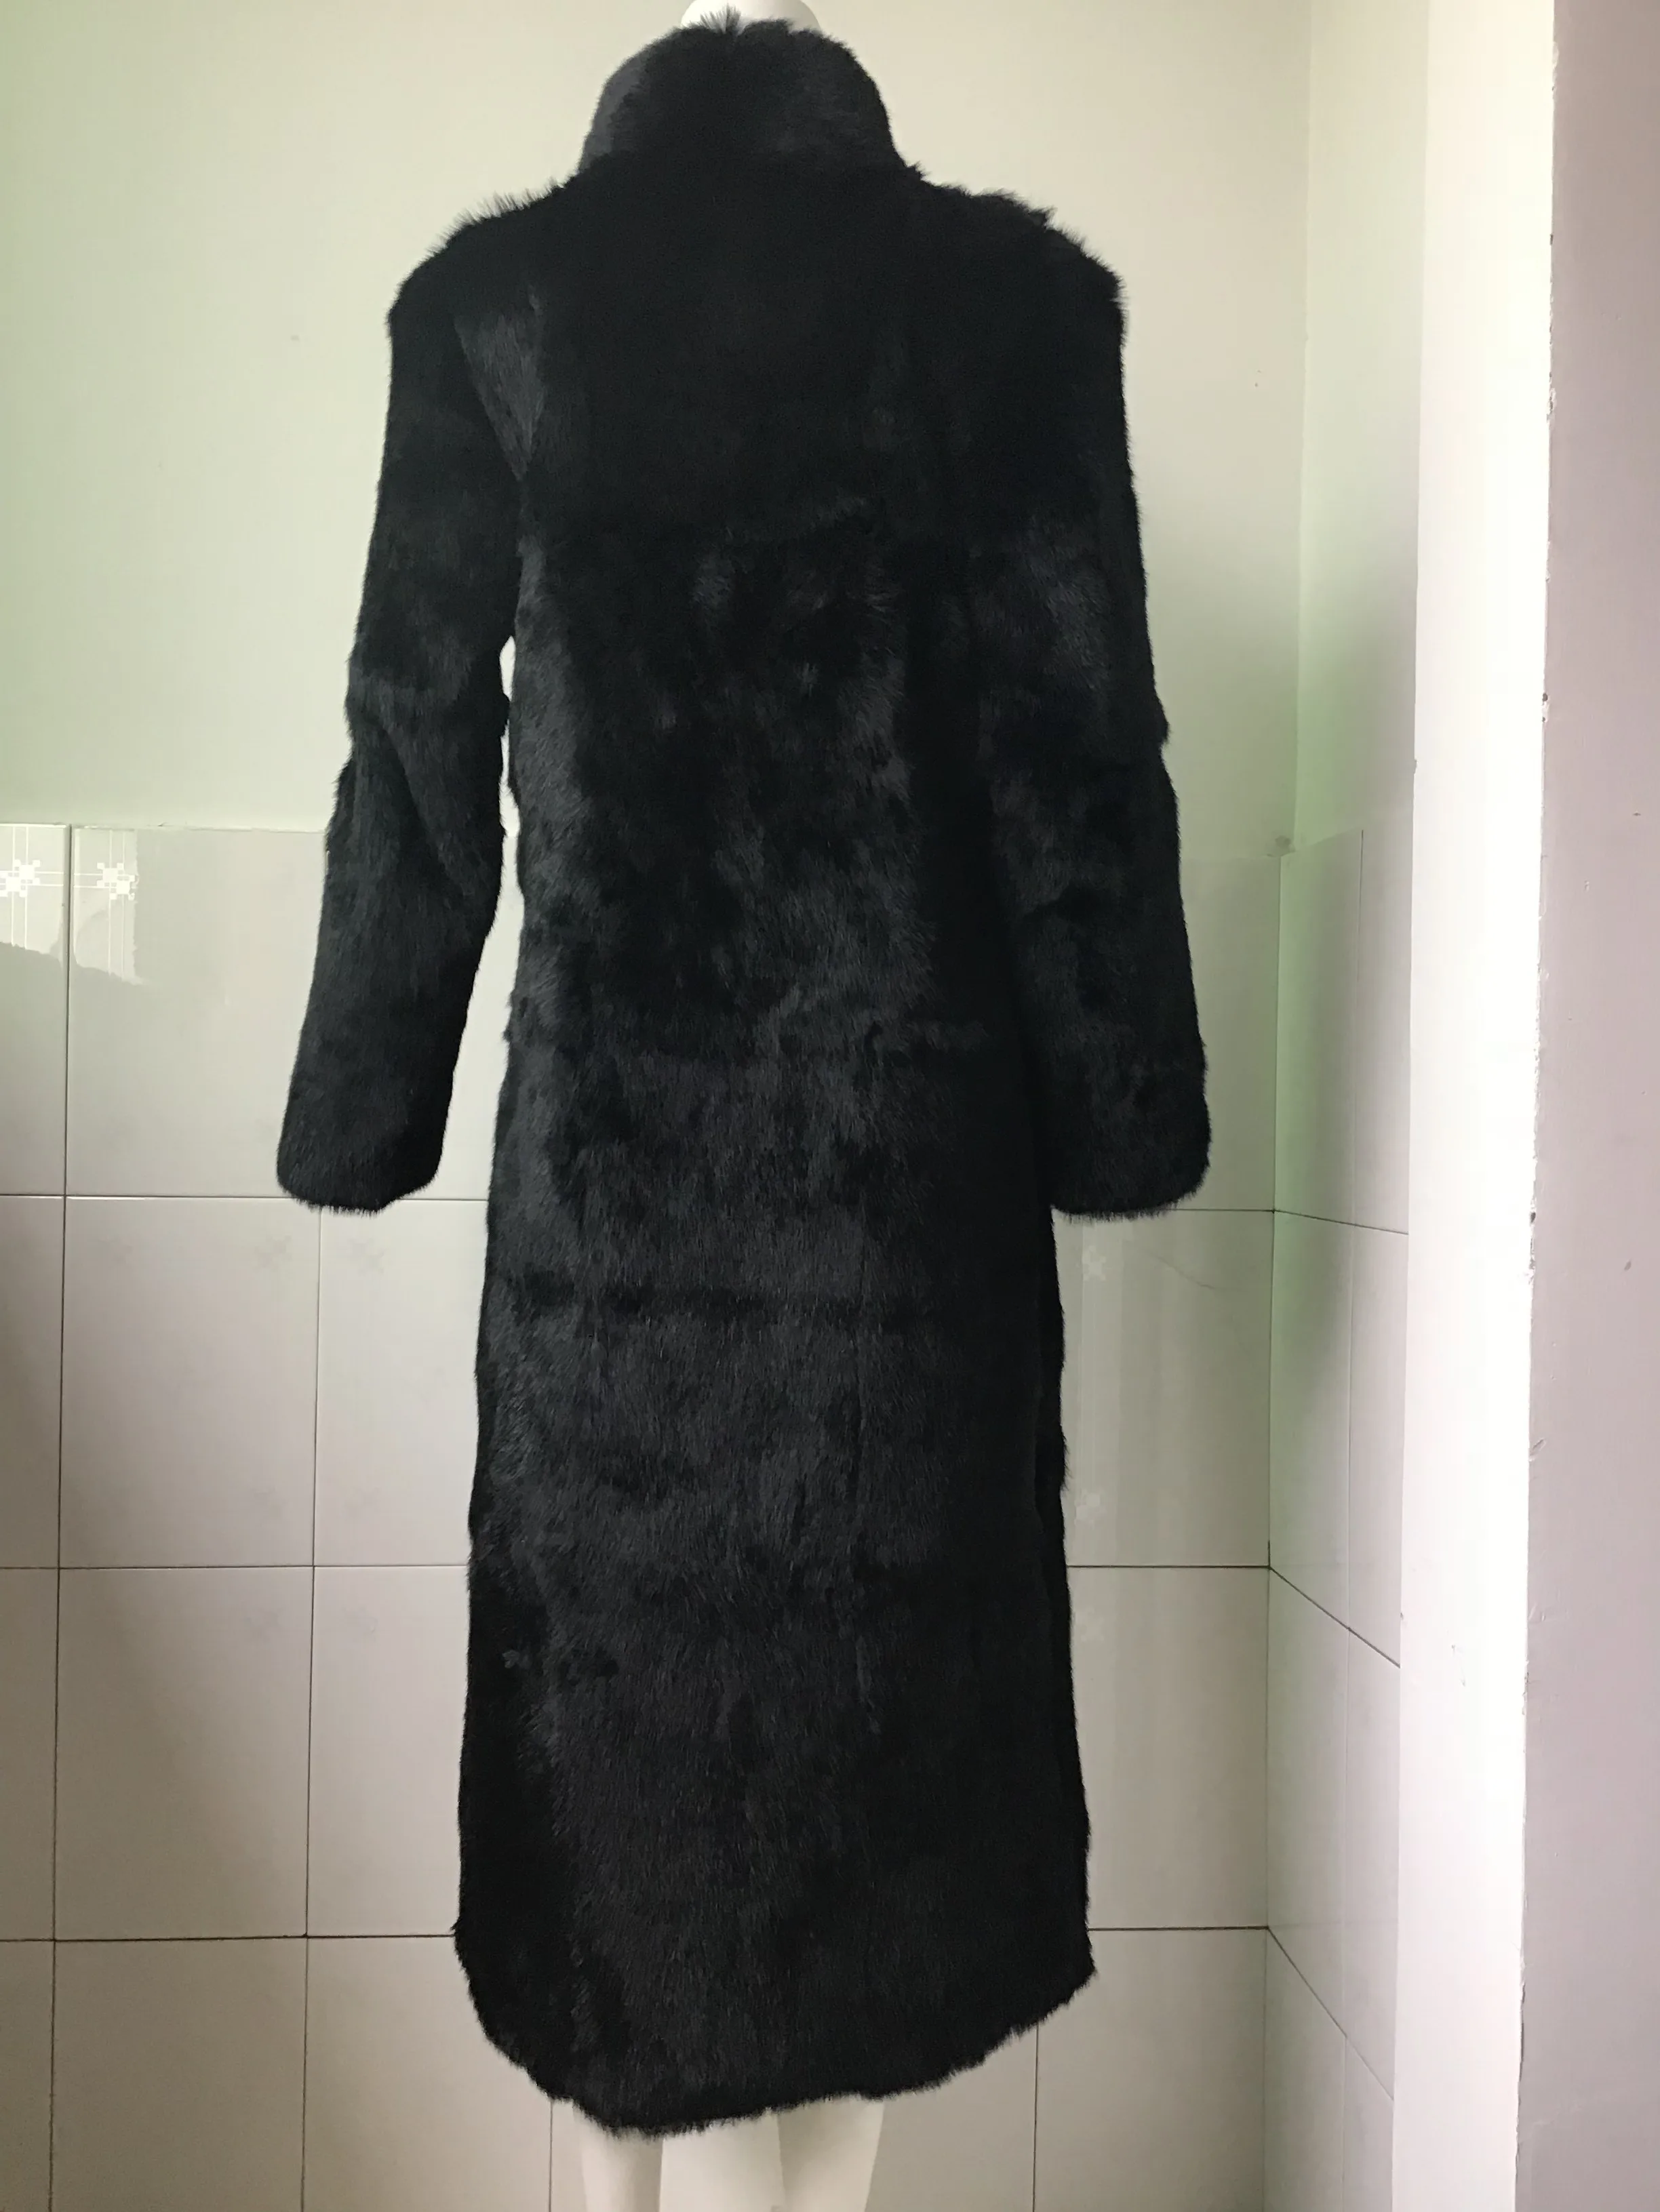 120 см полная длина настоящий натуральный черный мех кролика пальто Верхняя одежда парка зимний Тренч кожаный ремень подгонка под заказ размера плюс 6Xl 5XL